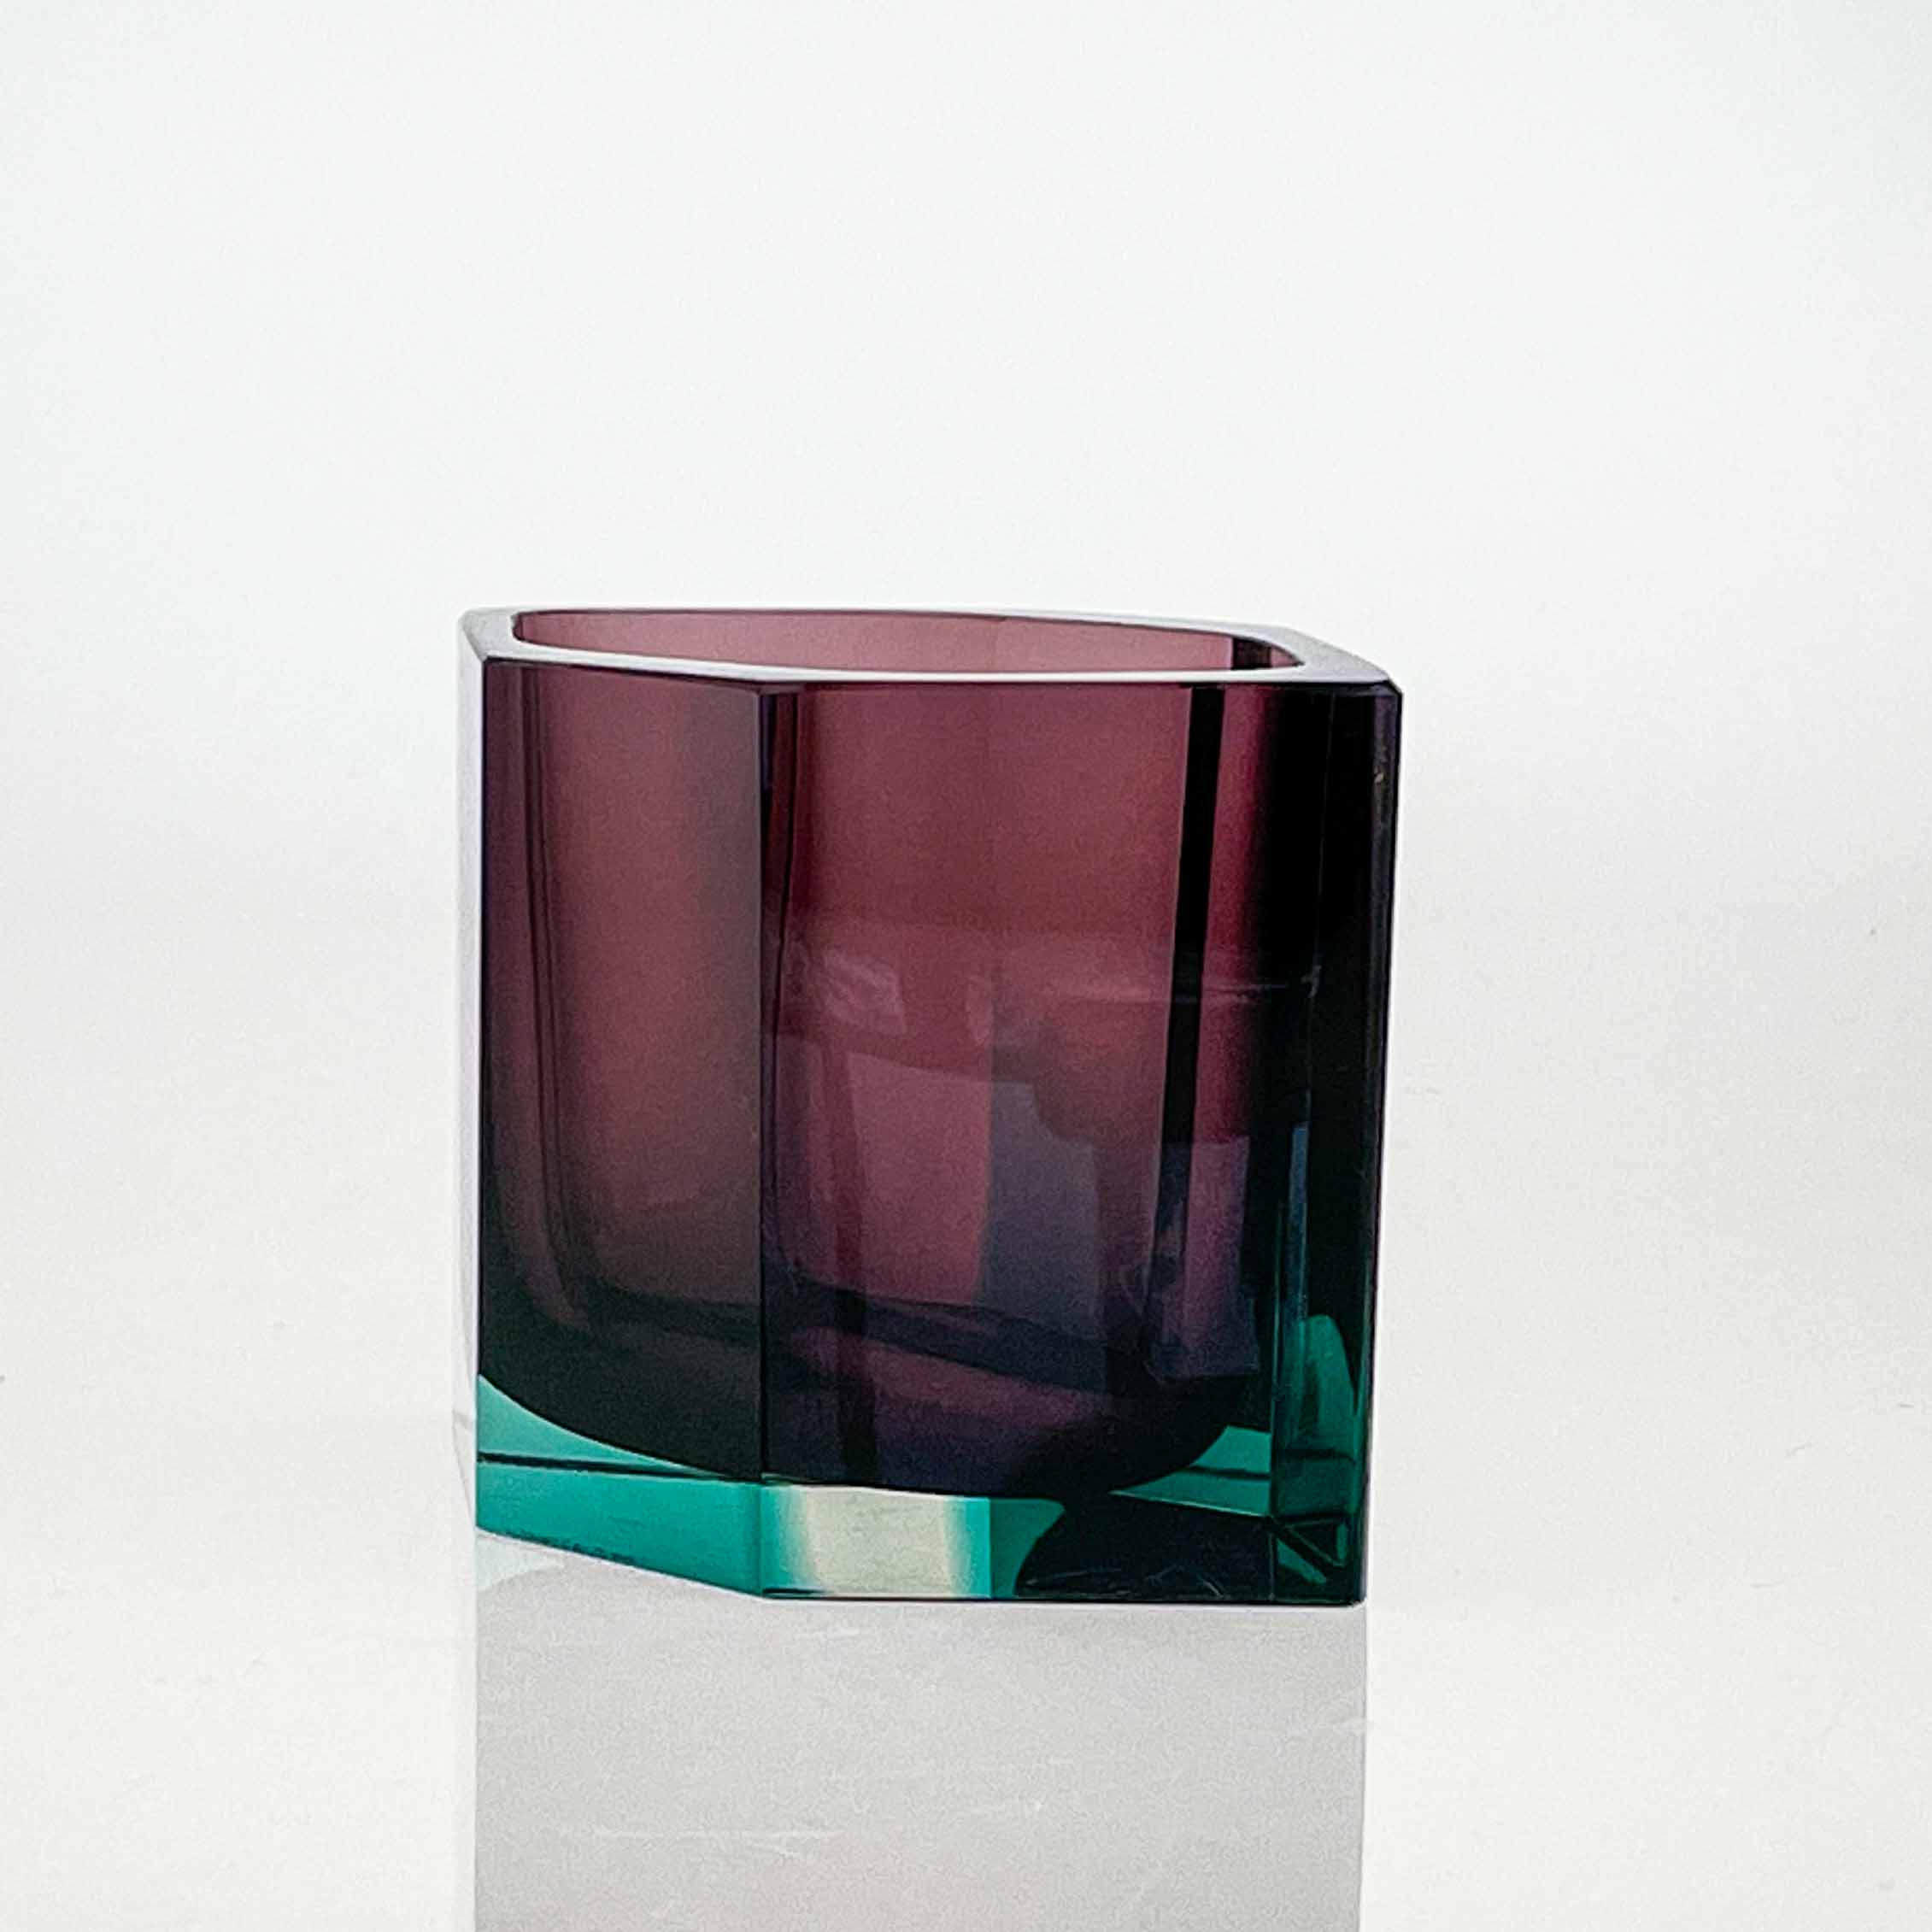 Kaj Franck - A glass art-object "Pilari", model KF 250 - Nuutajärvi-Notsjö Finland, 1959